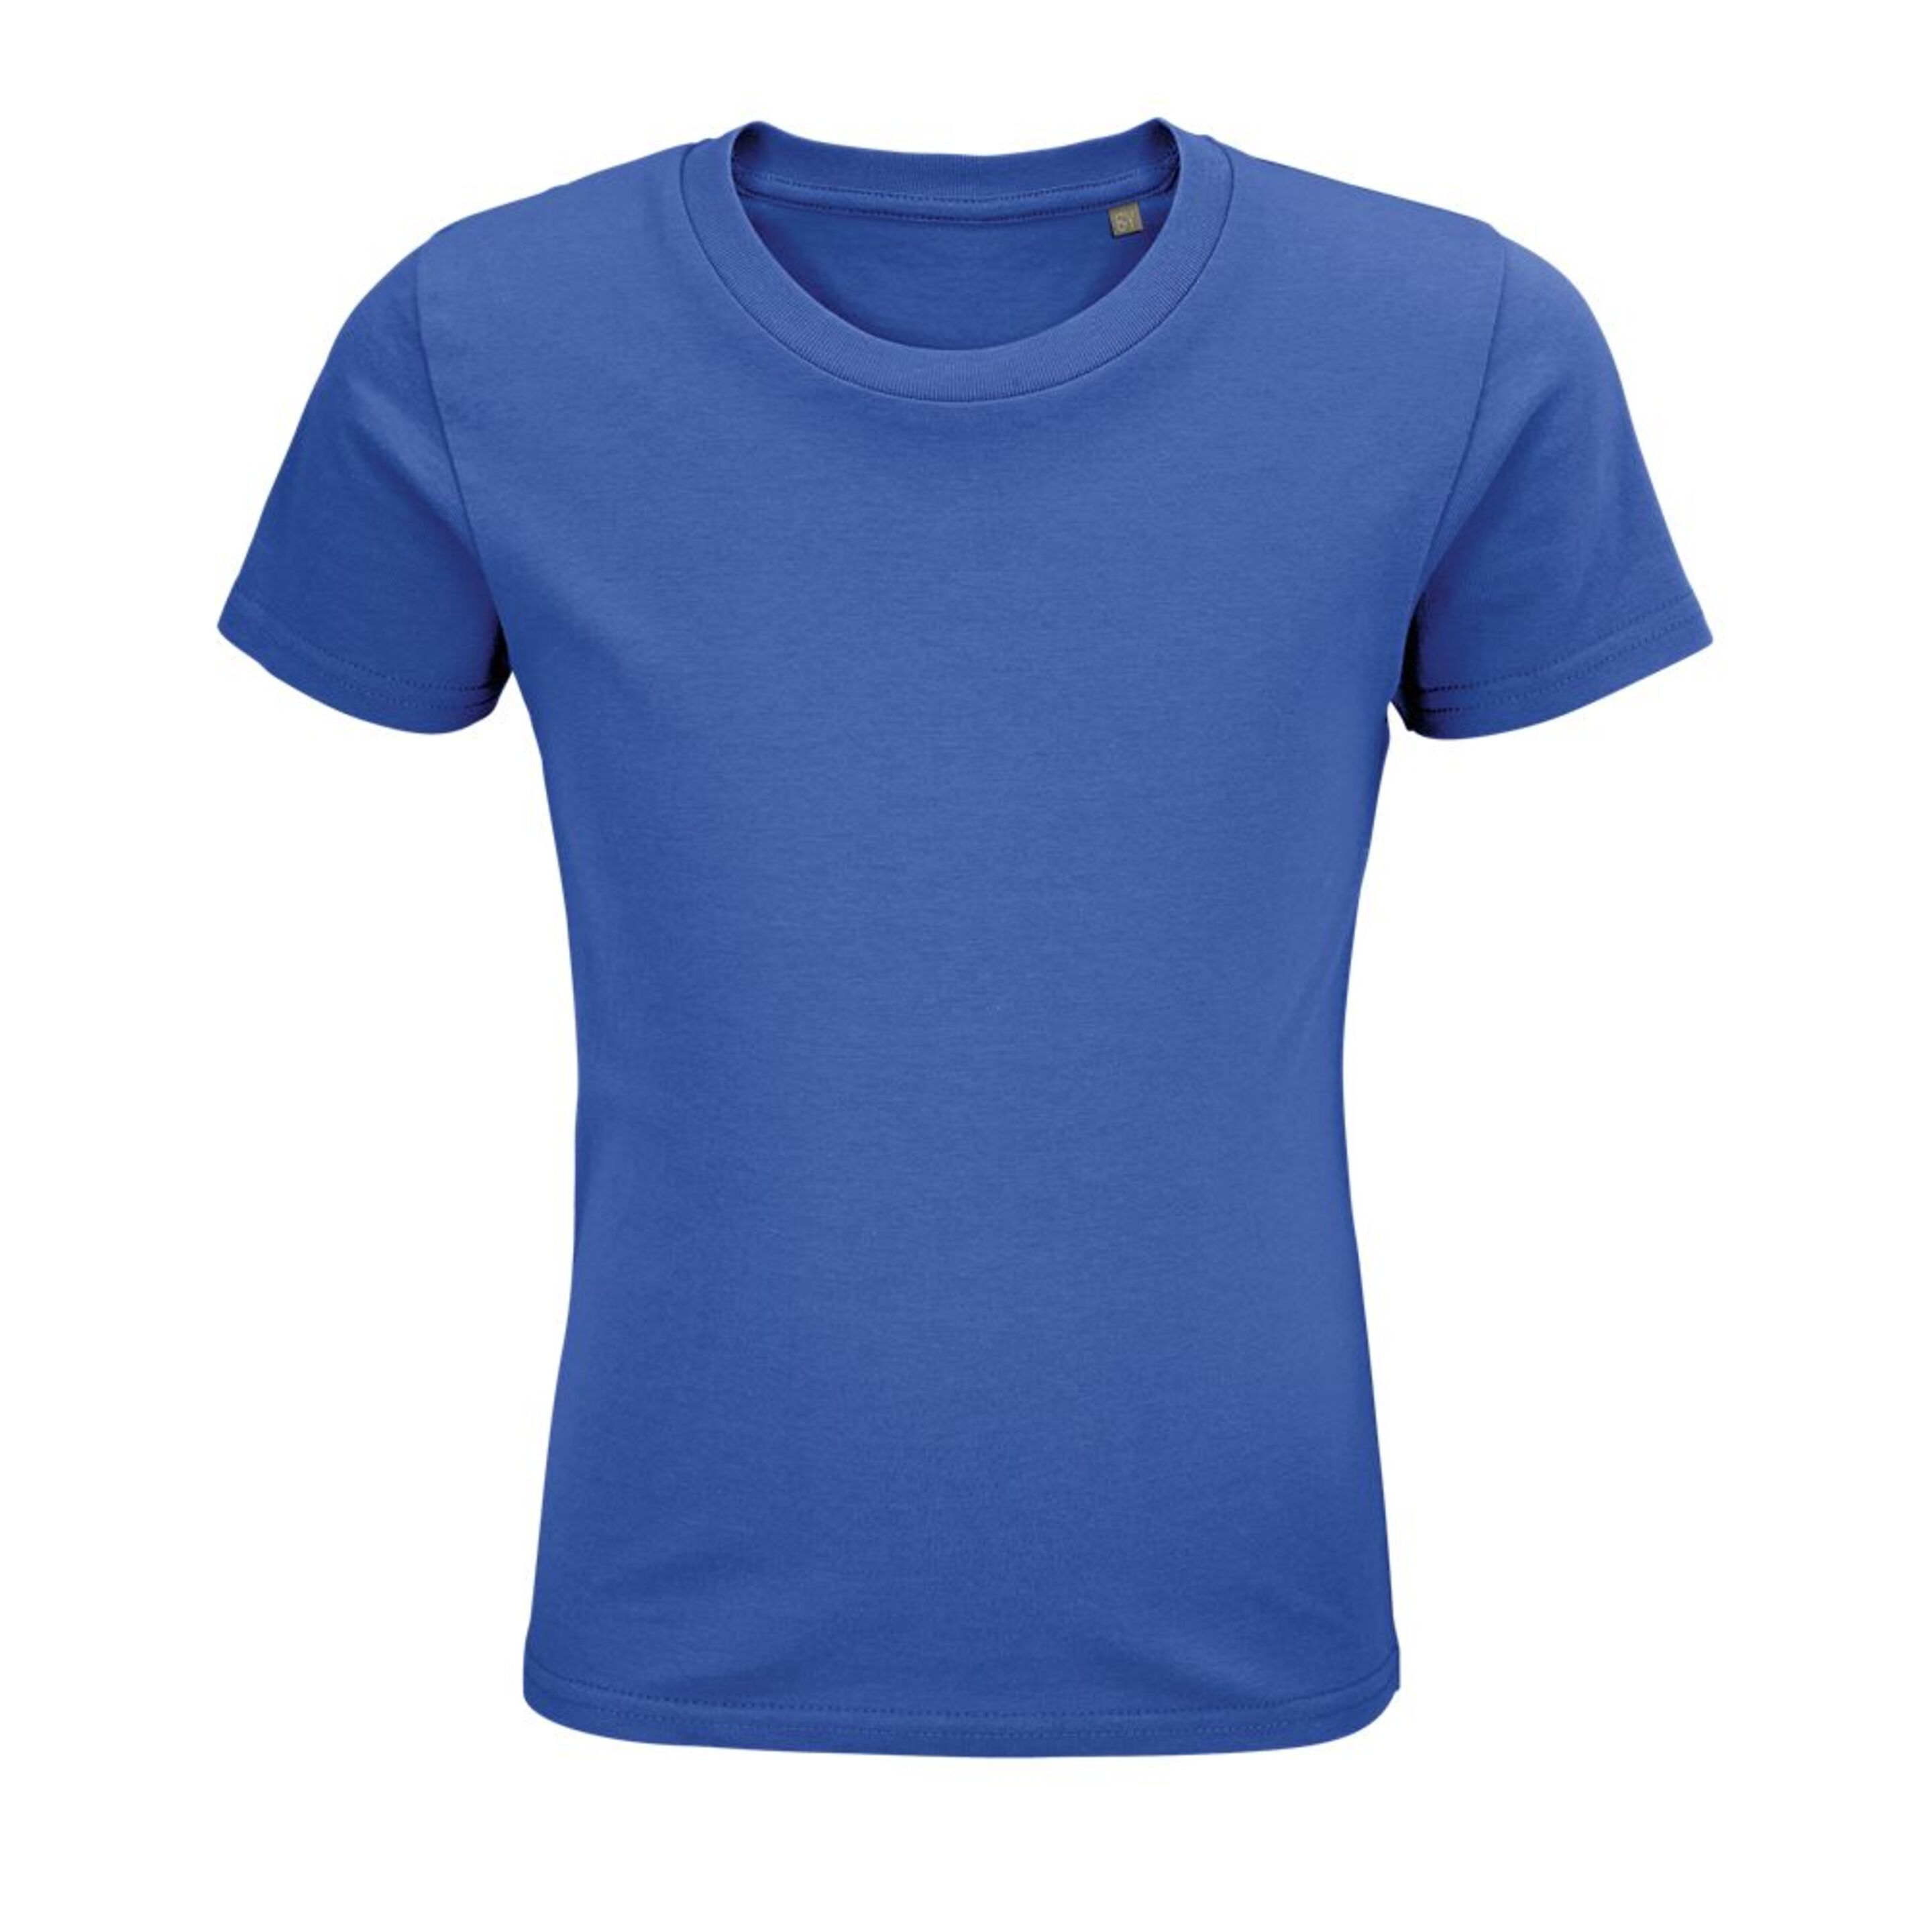 Camiseta Marnaula Pionner - Azul - Modelo Infantil  MKP